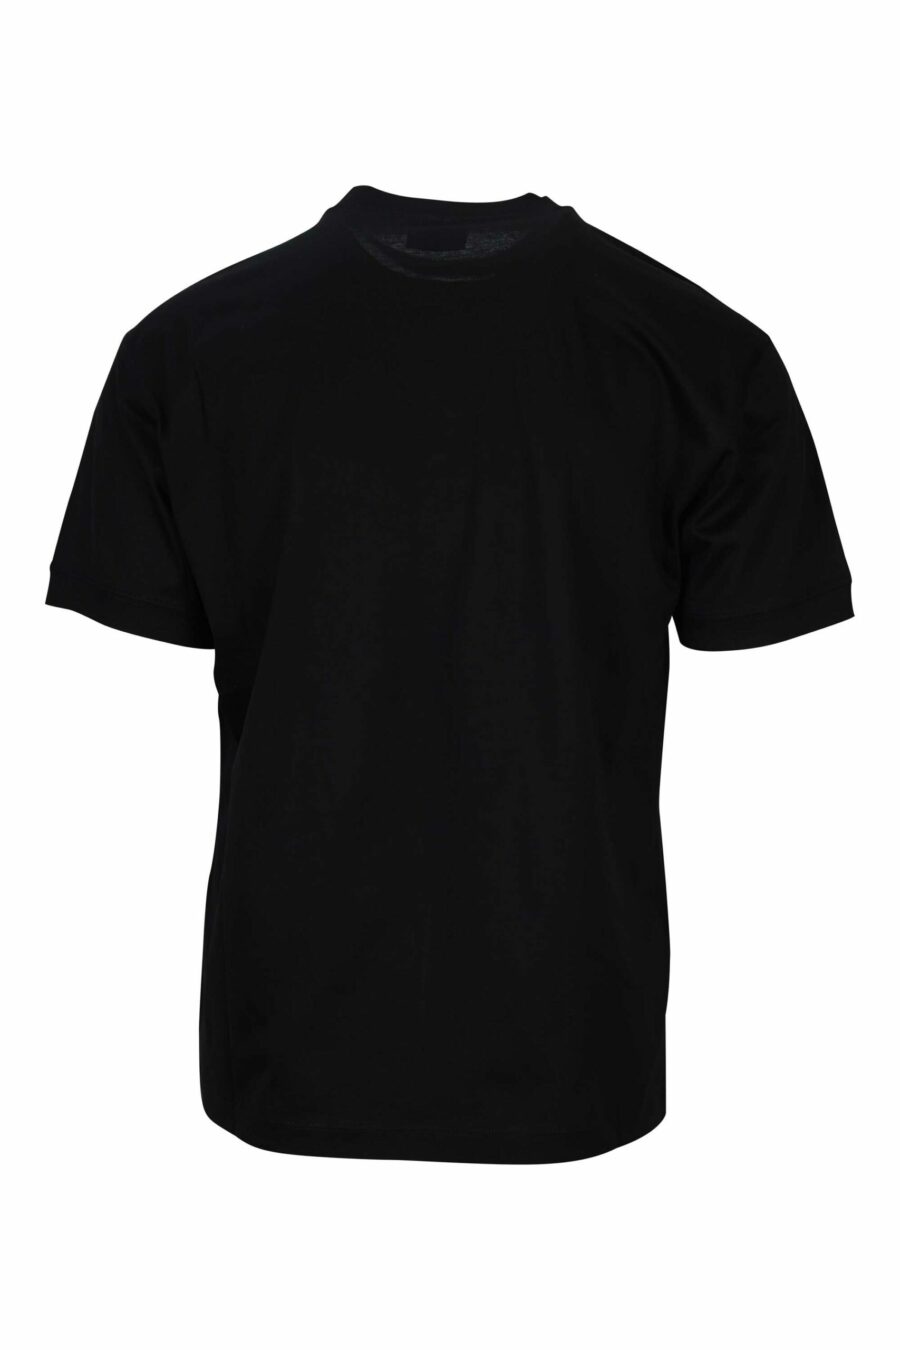 T-shirt preta com maxilogo "lux identity" em caixa verde - 8058947495726 1 à escala